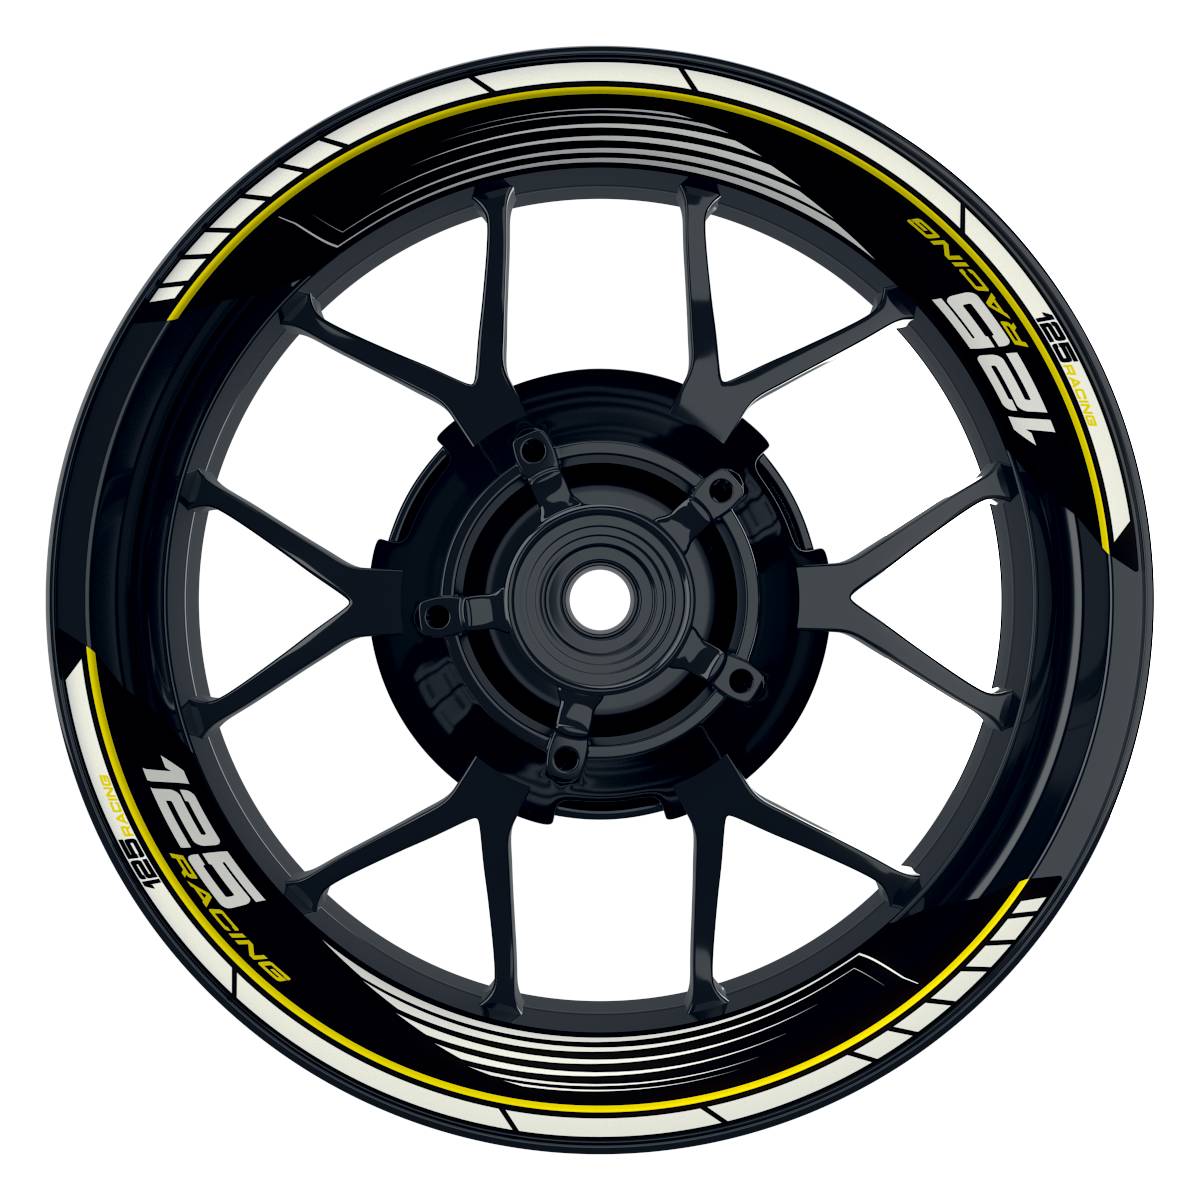 KTM Racing 125 SAW schwarz gelb Frontansicht